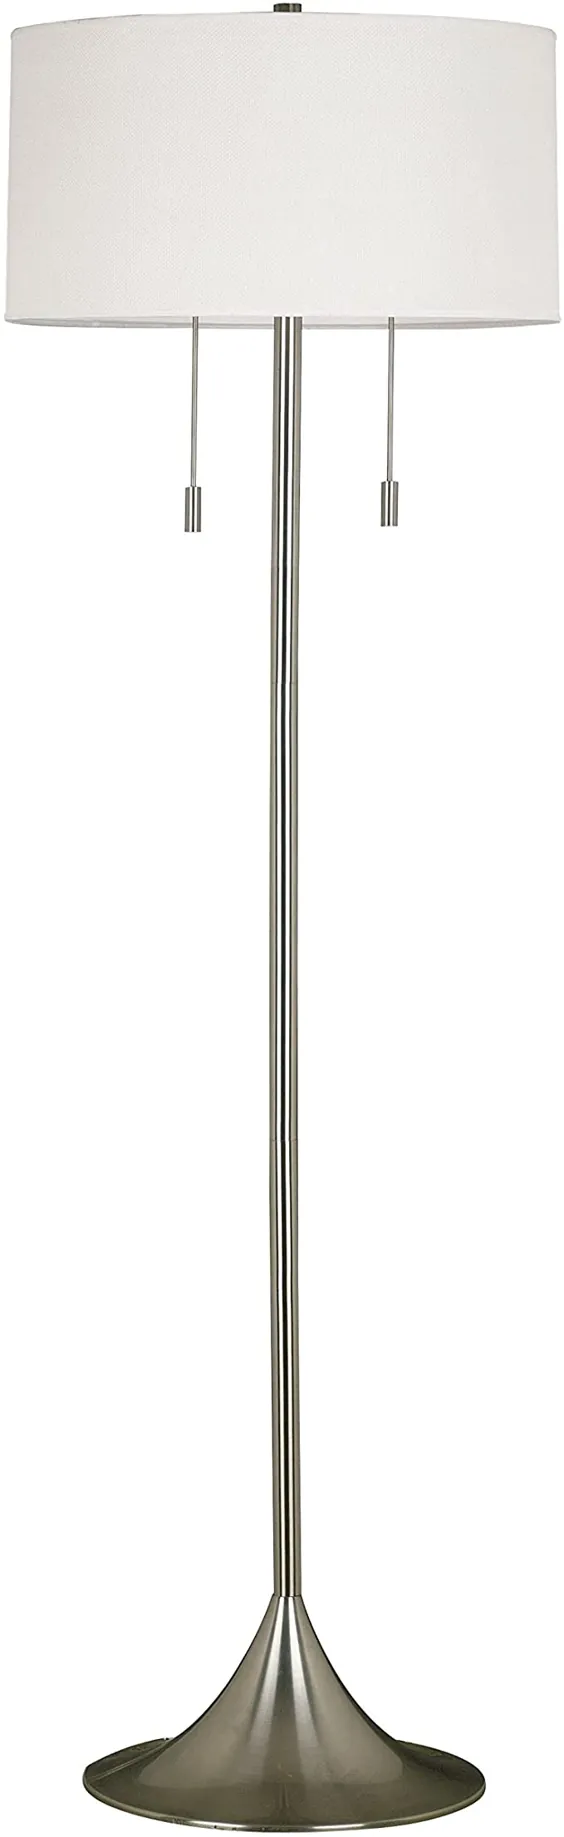 چراغ کف پایه 61 اینچ براق مدرن Retro با سایه درام سفید - شامل قلم زنده گی Modhaus